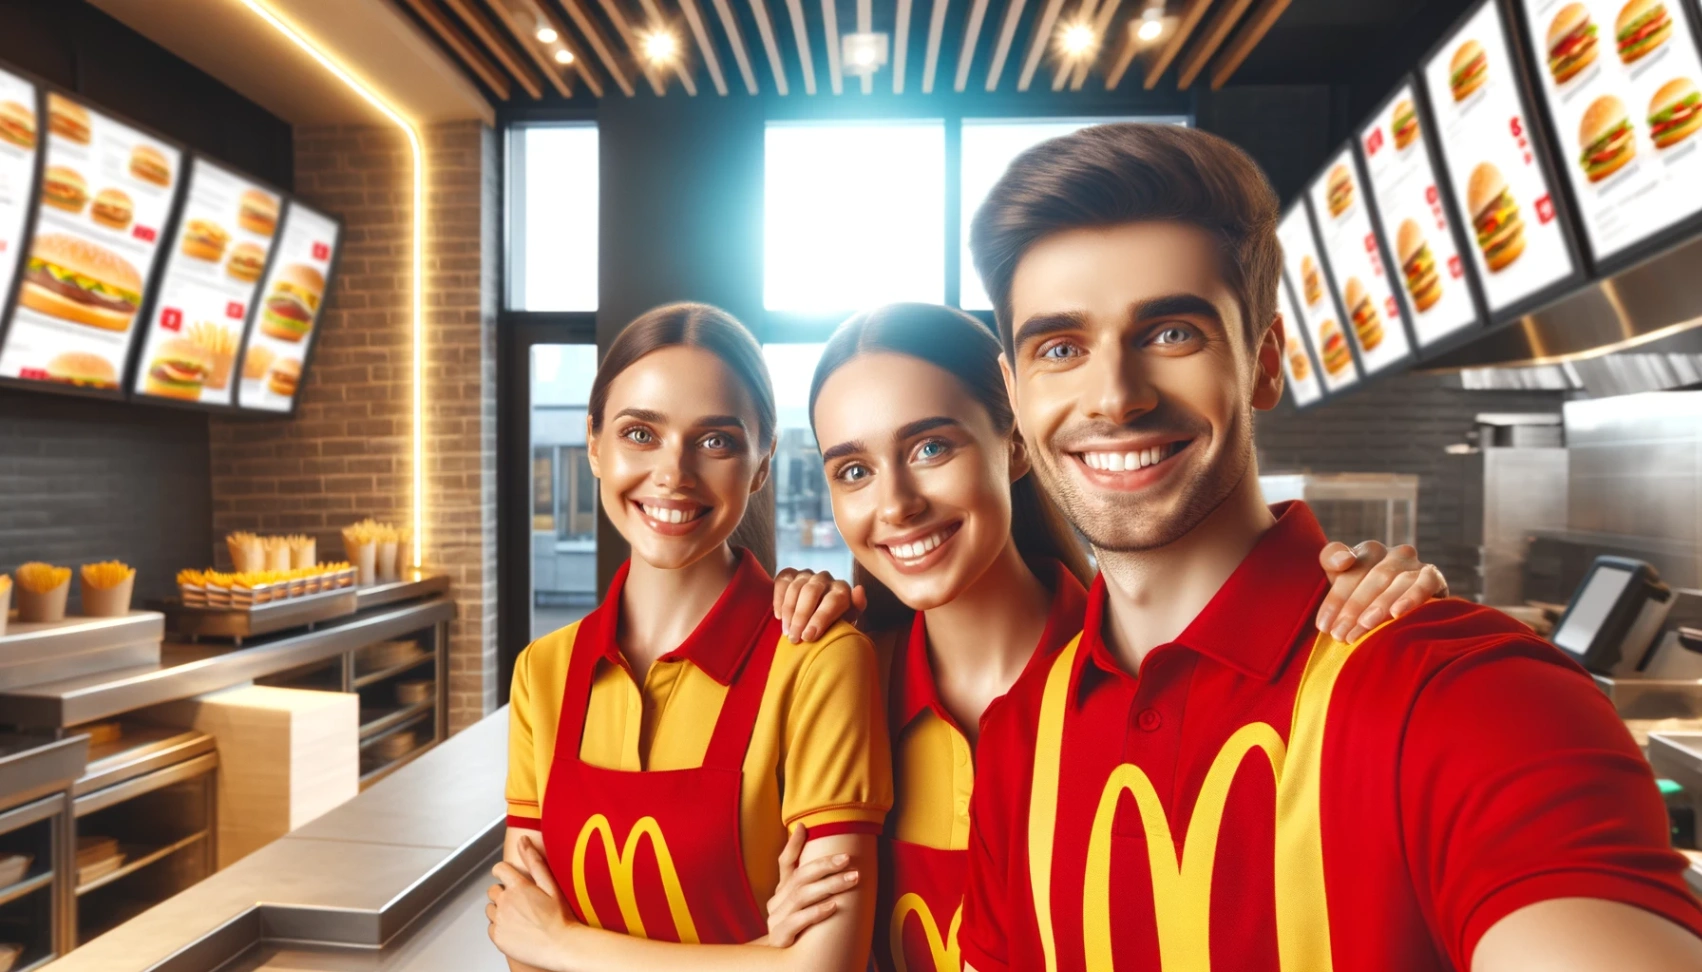 Lavori in McDonald's: Come Candidarsi Facilmente Online